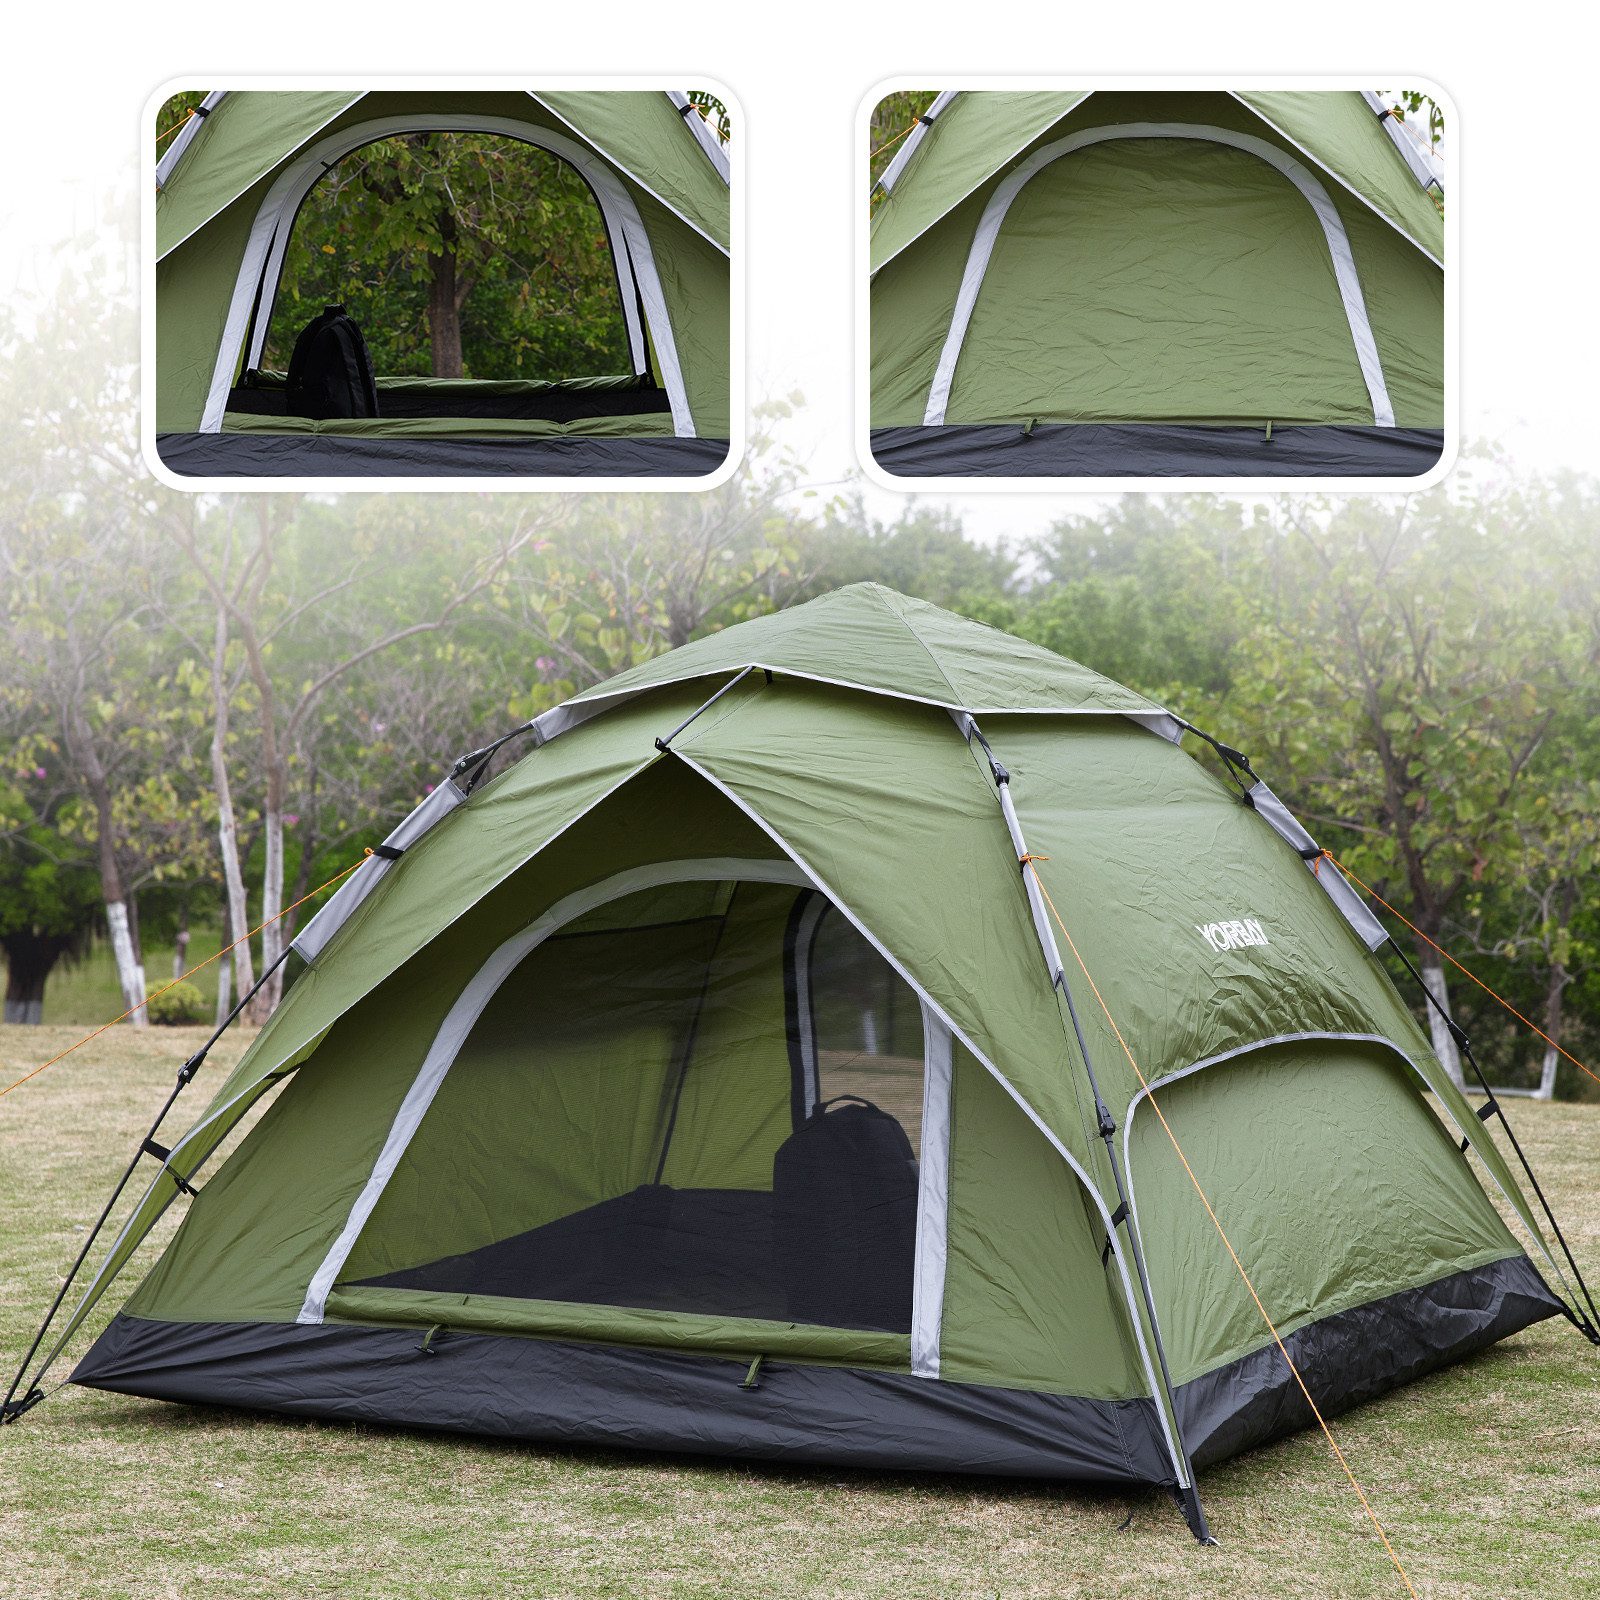 Yorbay Kuppelzelt 2 in 1 Pop Up Campingzelt doppelwandig wasserdicht UV-Schutz, Personen: 3 (mit Heringen, Windseile und Tragetasche), für 2-3 Personen für Wandern, Trekking, Outdoor